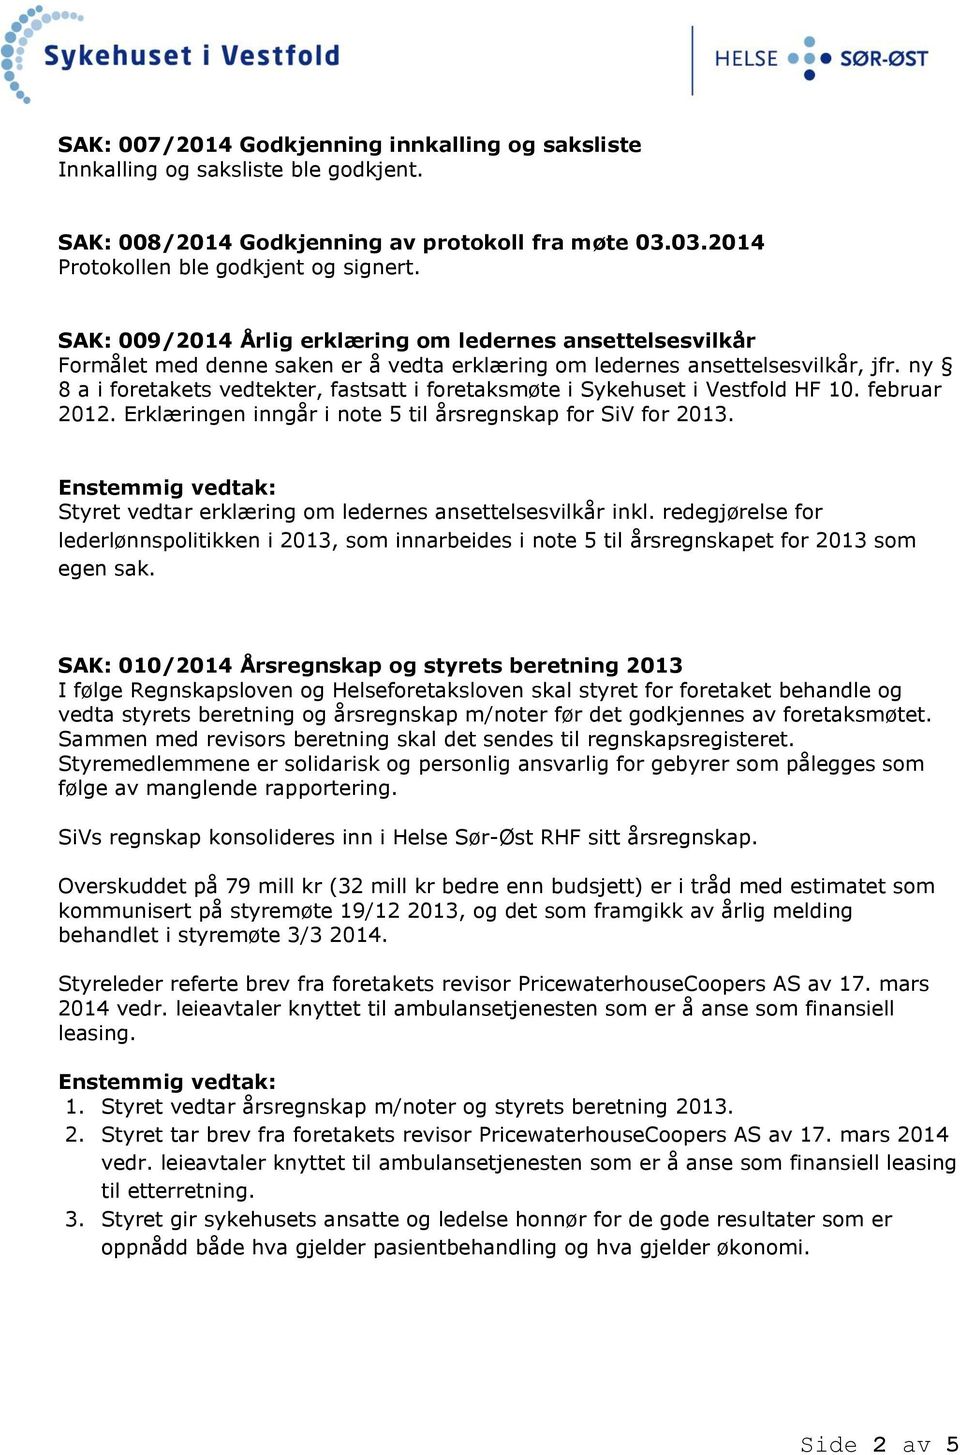 ny 8 a i foretakets vedtekter, fastsatt i foretaksmøte i Sykehuset i Vestfold HF 10. februar 2012. Erklæringen inngår i note 5 til årsregnskap for SiV for 2013.